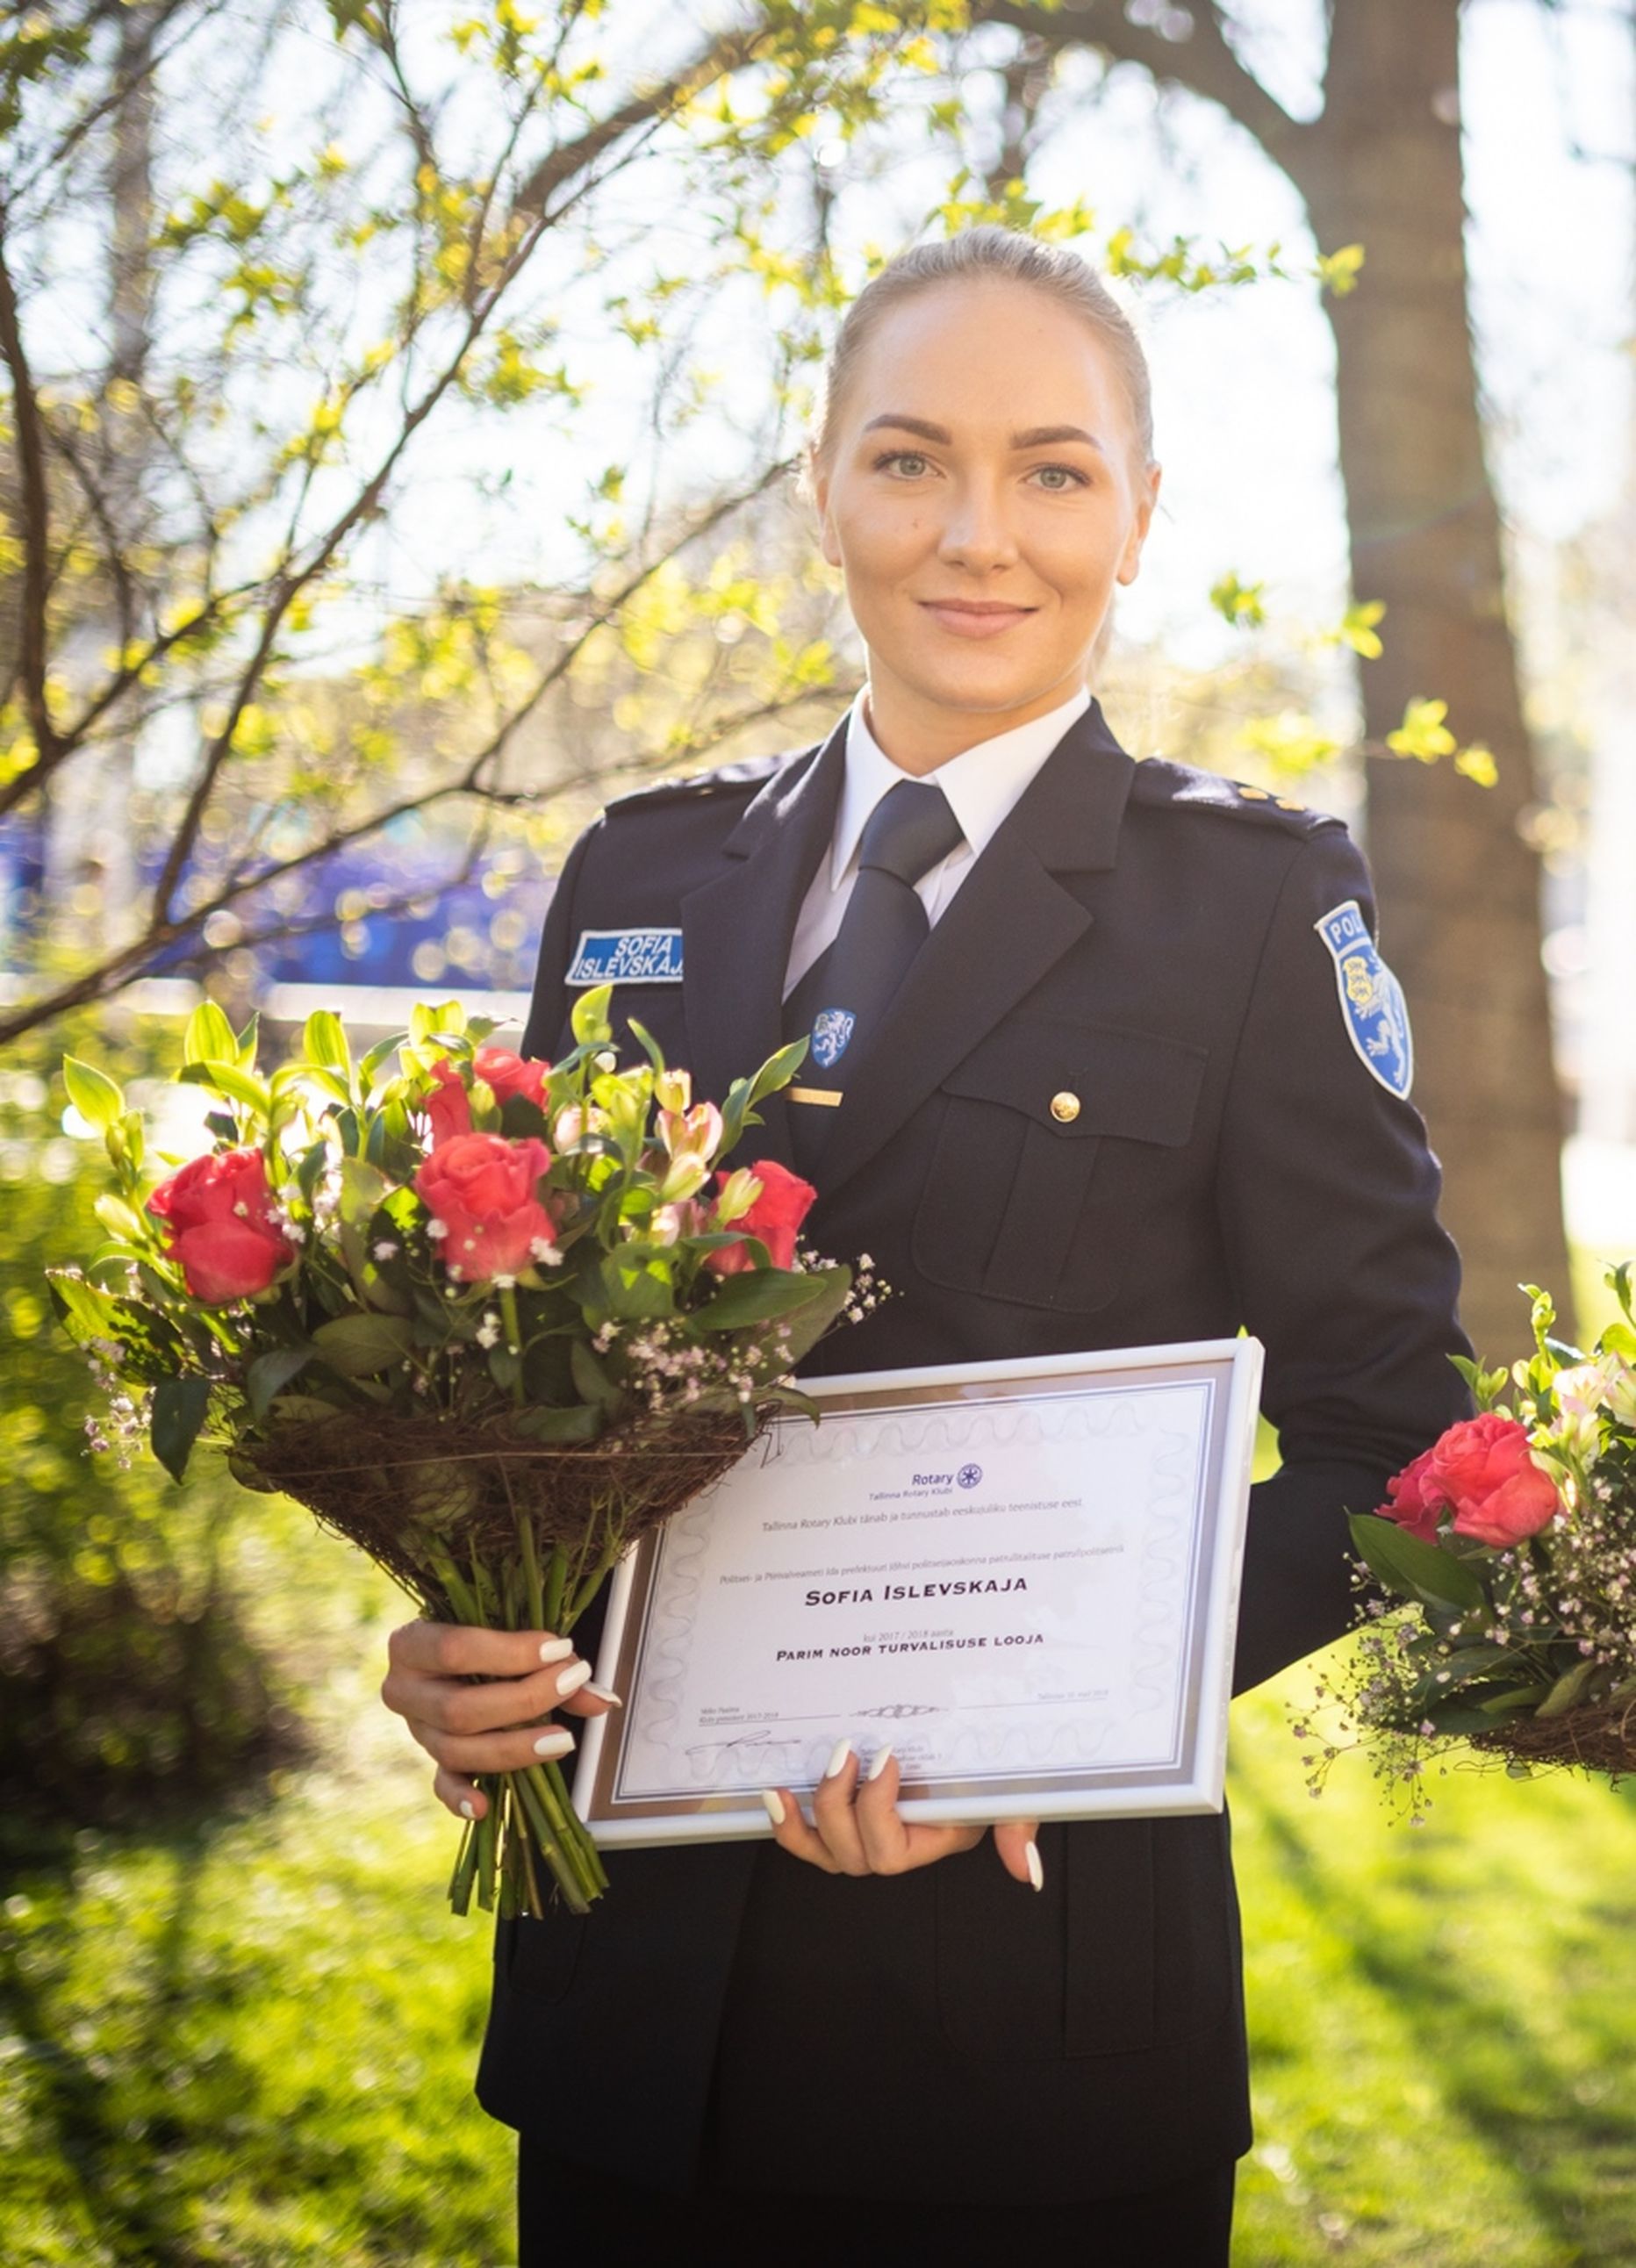 Таллиннский клуб Rotary в 2018 году признал Софию Ислевскую лучшим молодым полицейским.